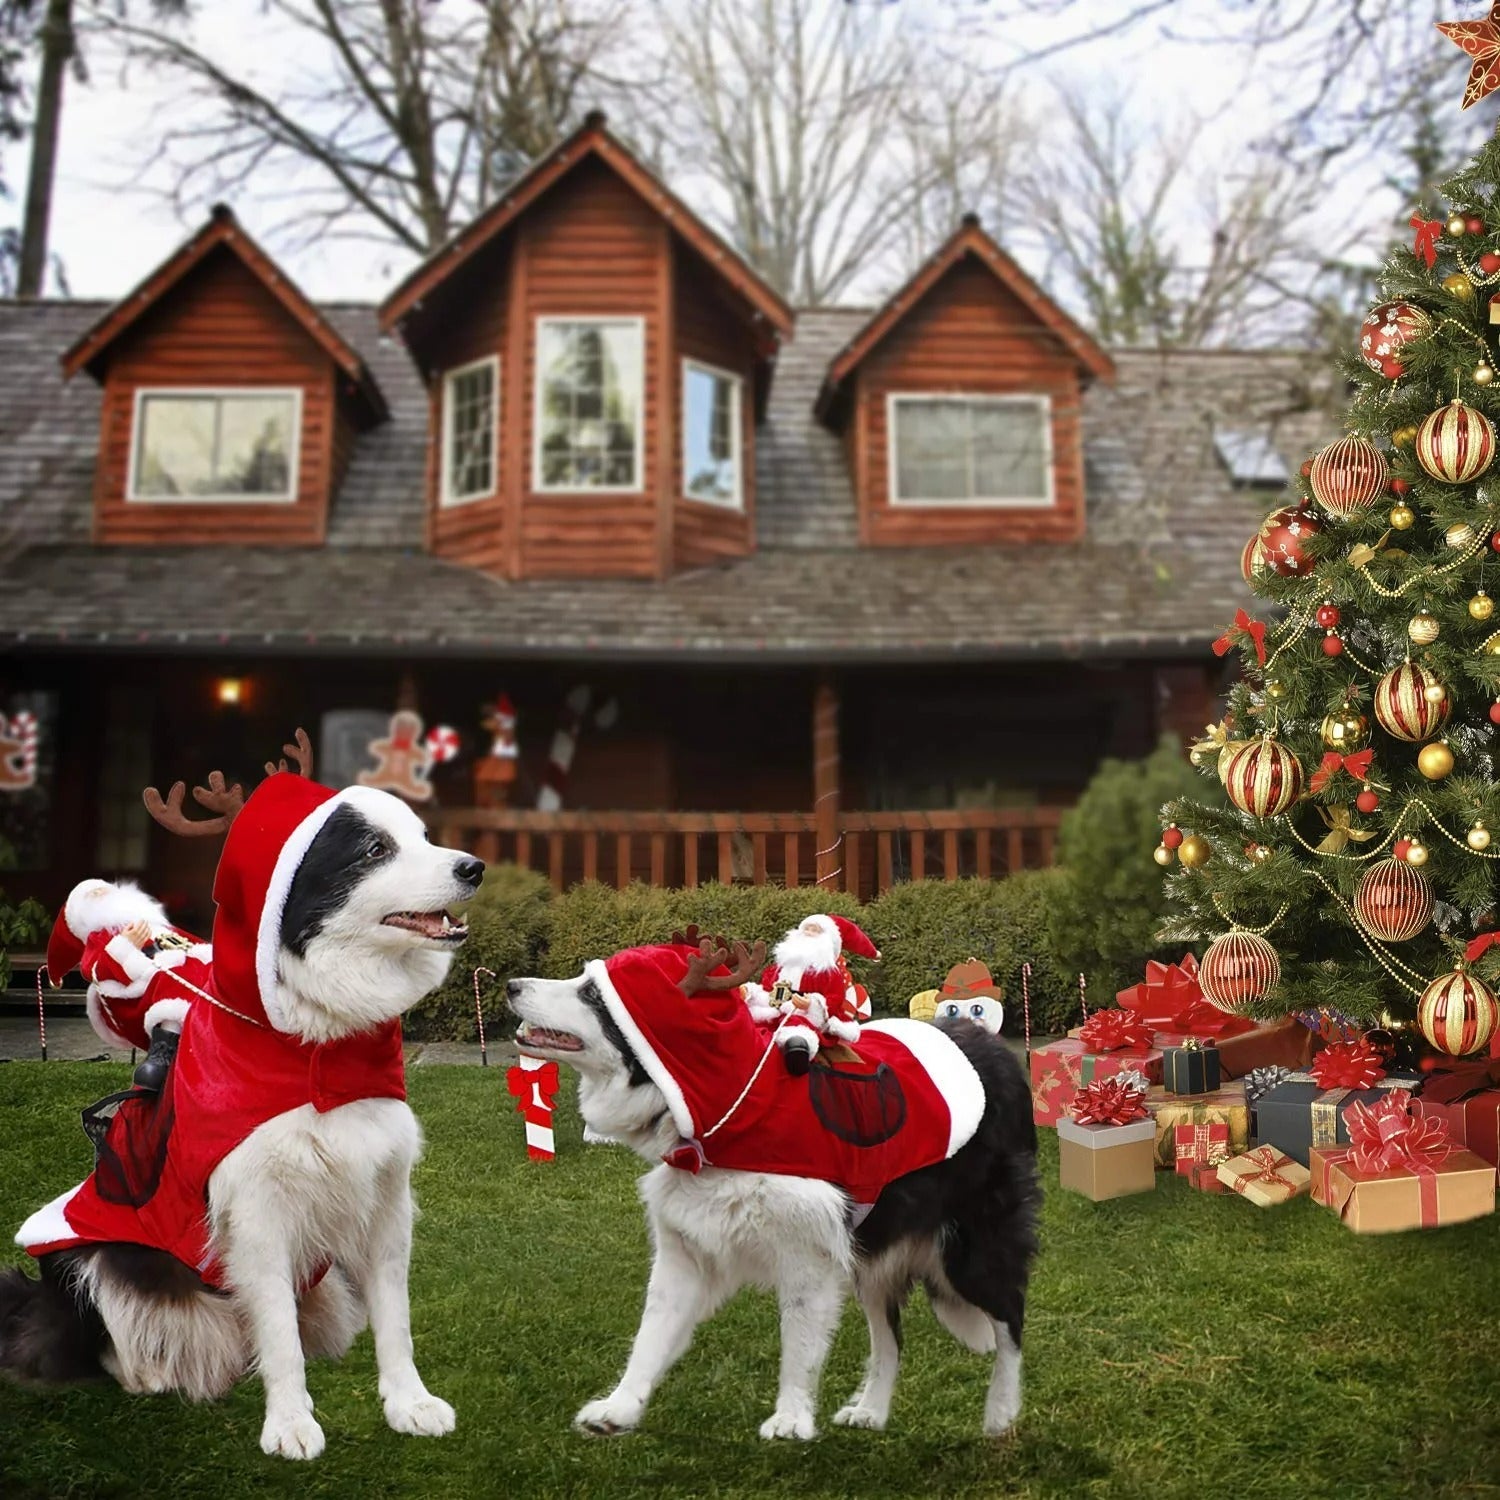 FurPaw™ - Dog Christmas Costume